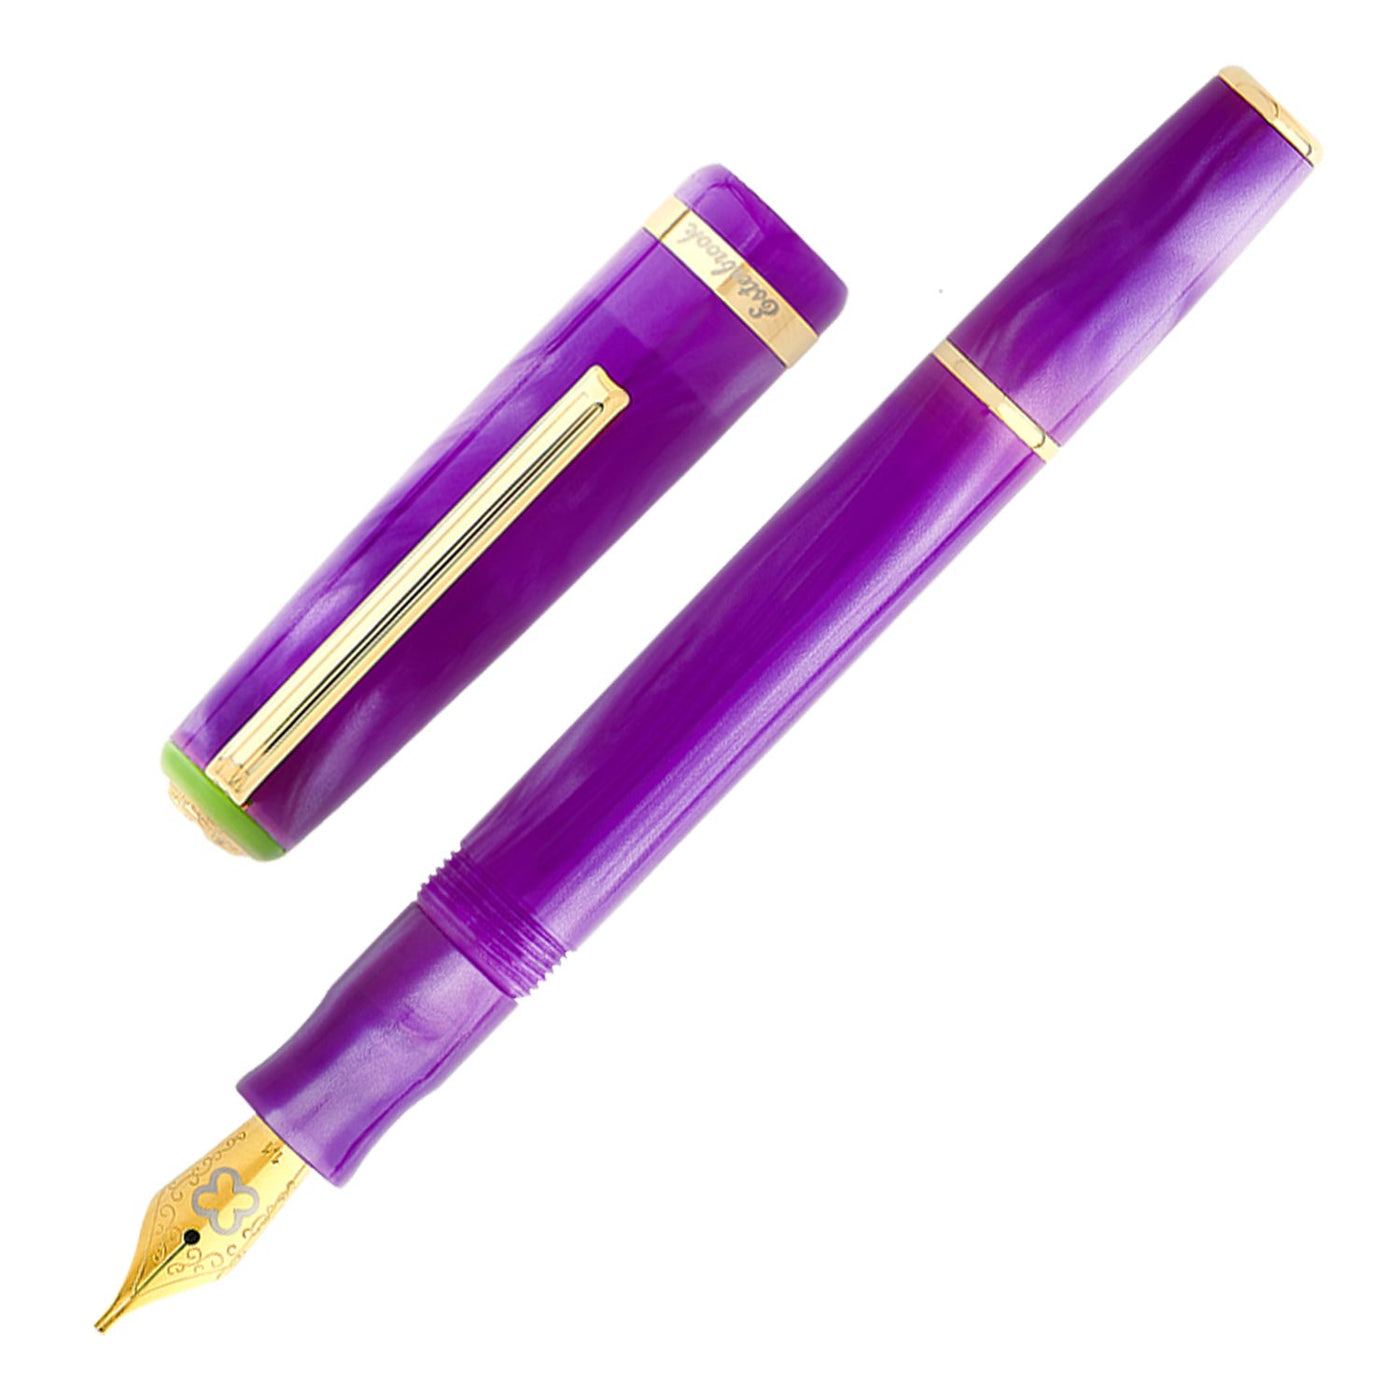 Esterbrook JR Pocket Fountain Pen - Purple Passion GT 1